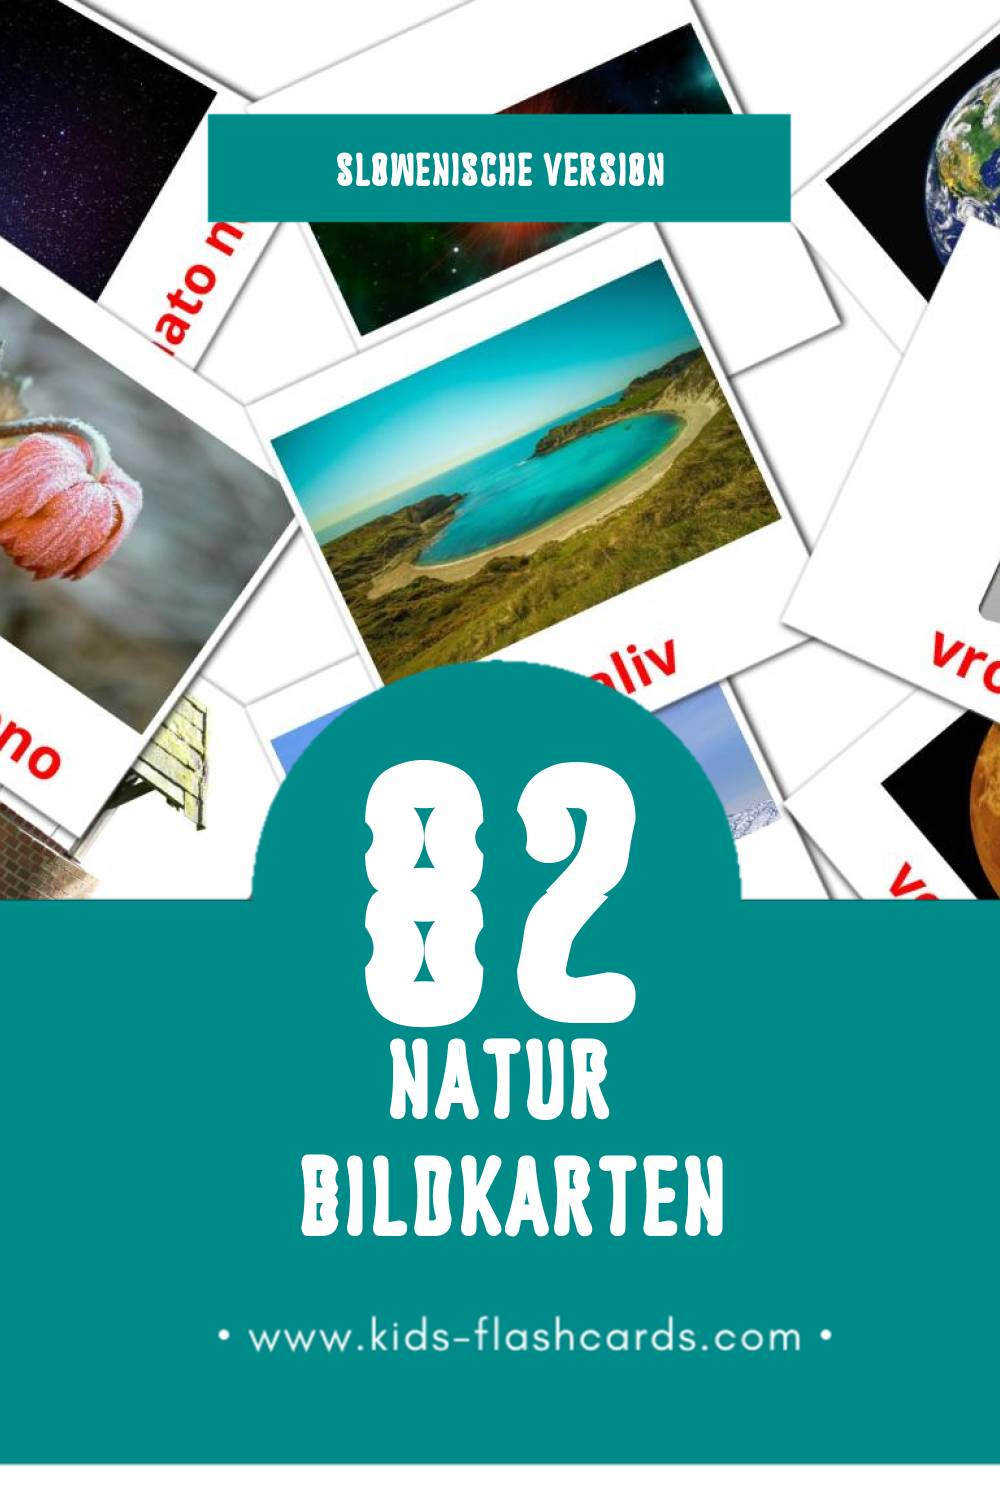 Visual Narava Flashcards für Kleinkinder (82 Karten in Slowenisch)